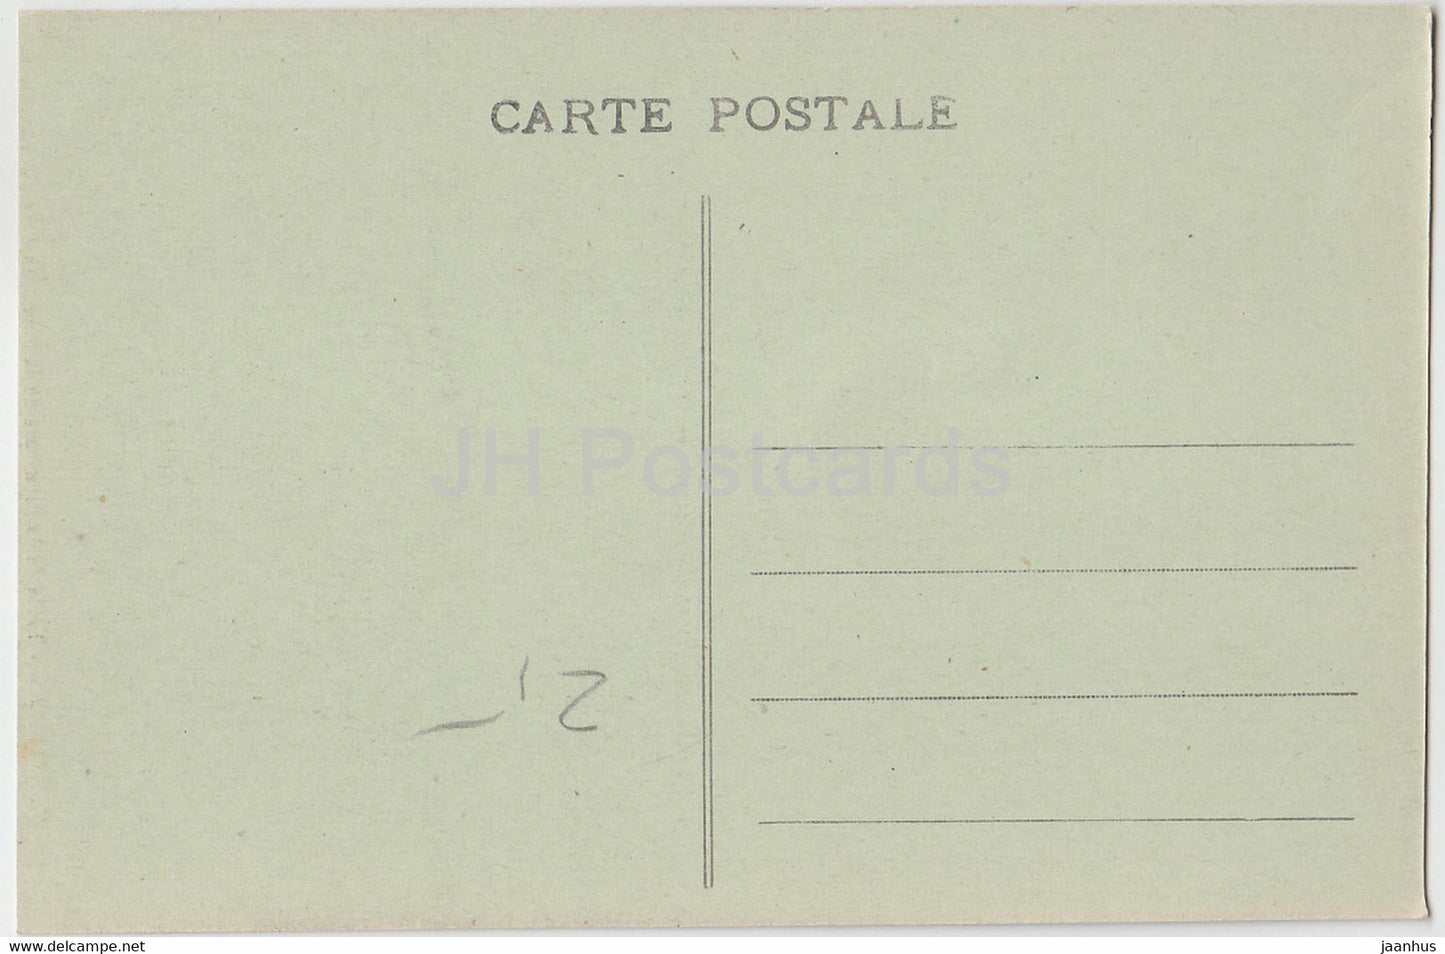 Versailles - Table de la Signature de la Paix 28 juin 1919 - carte postale ancienne - 101 - France - inutilisée